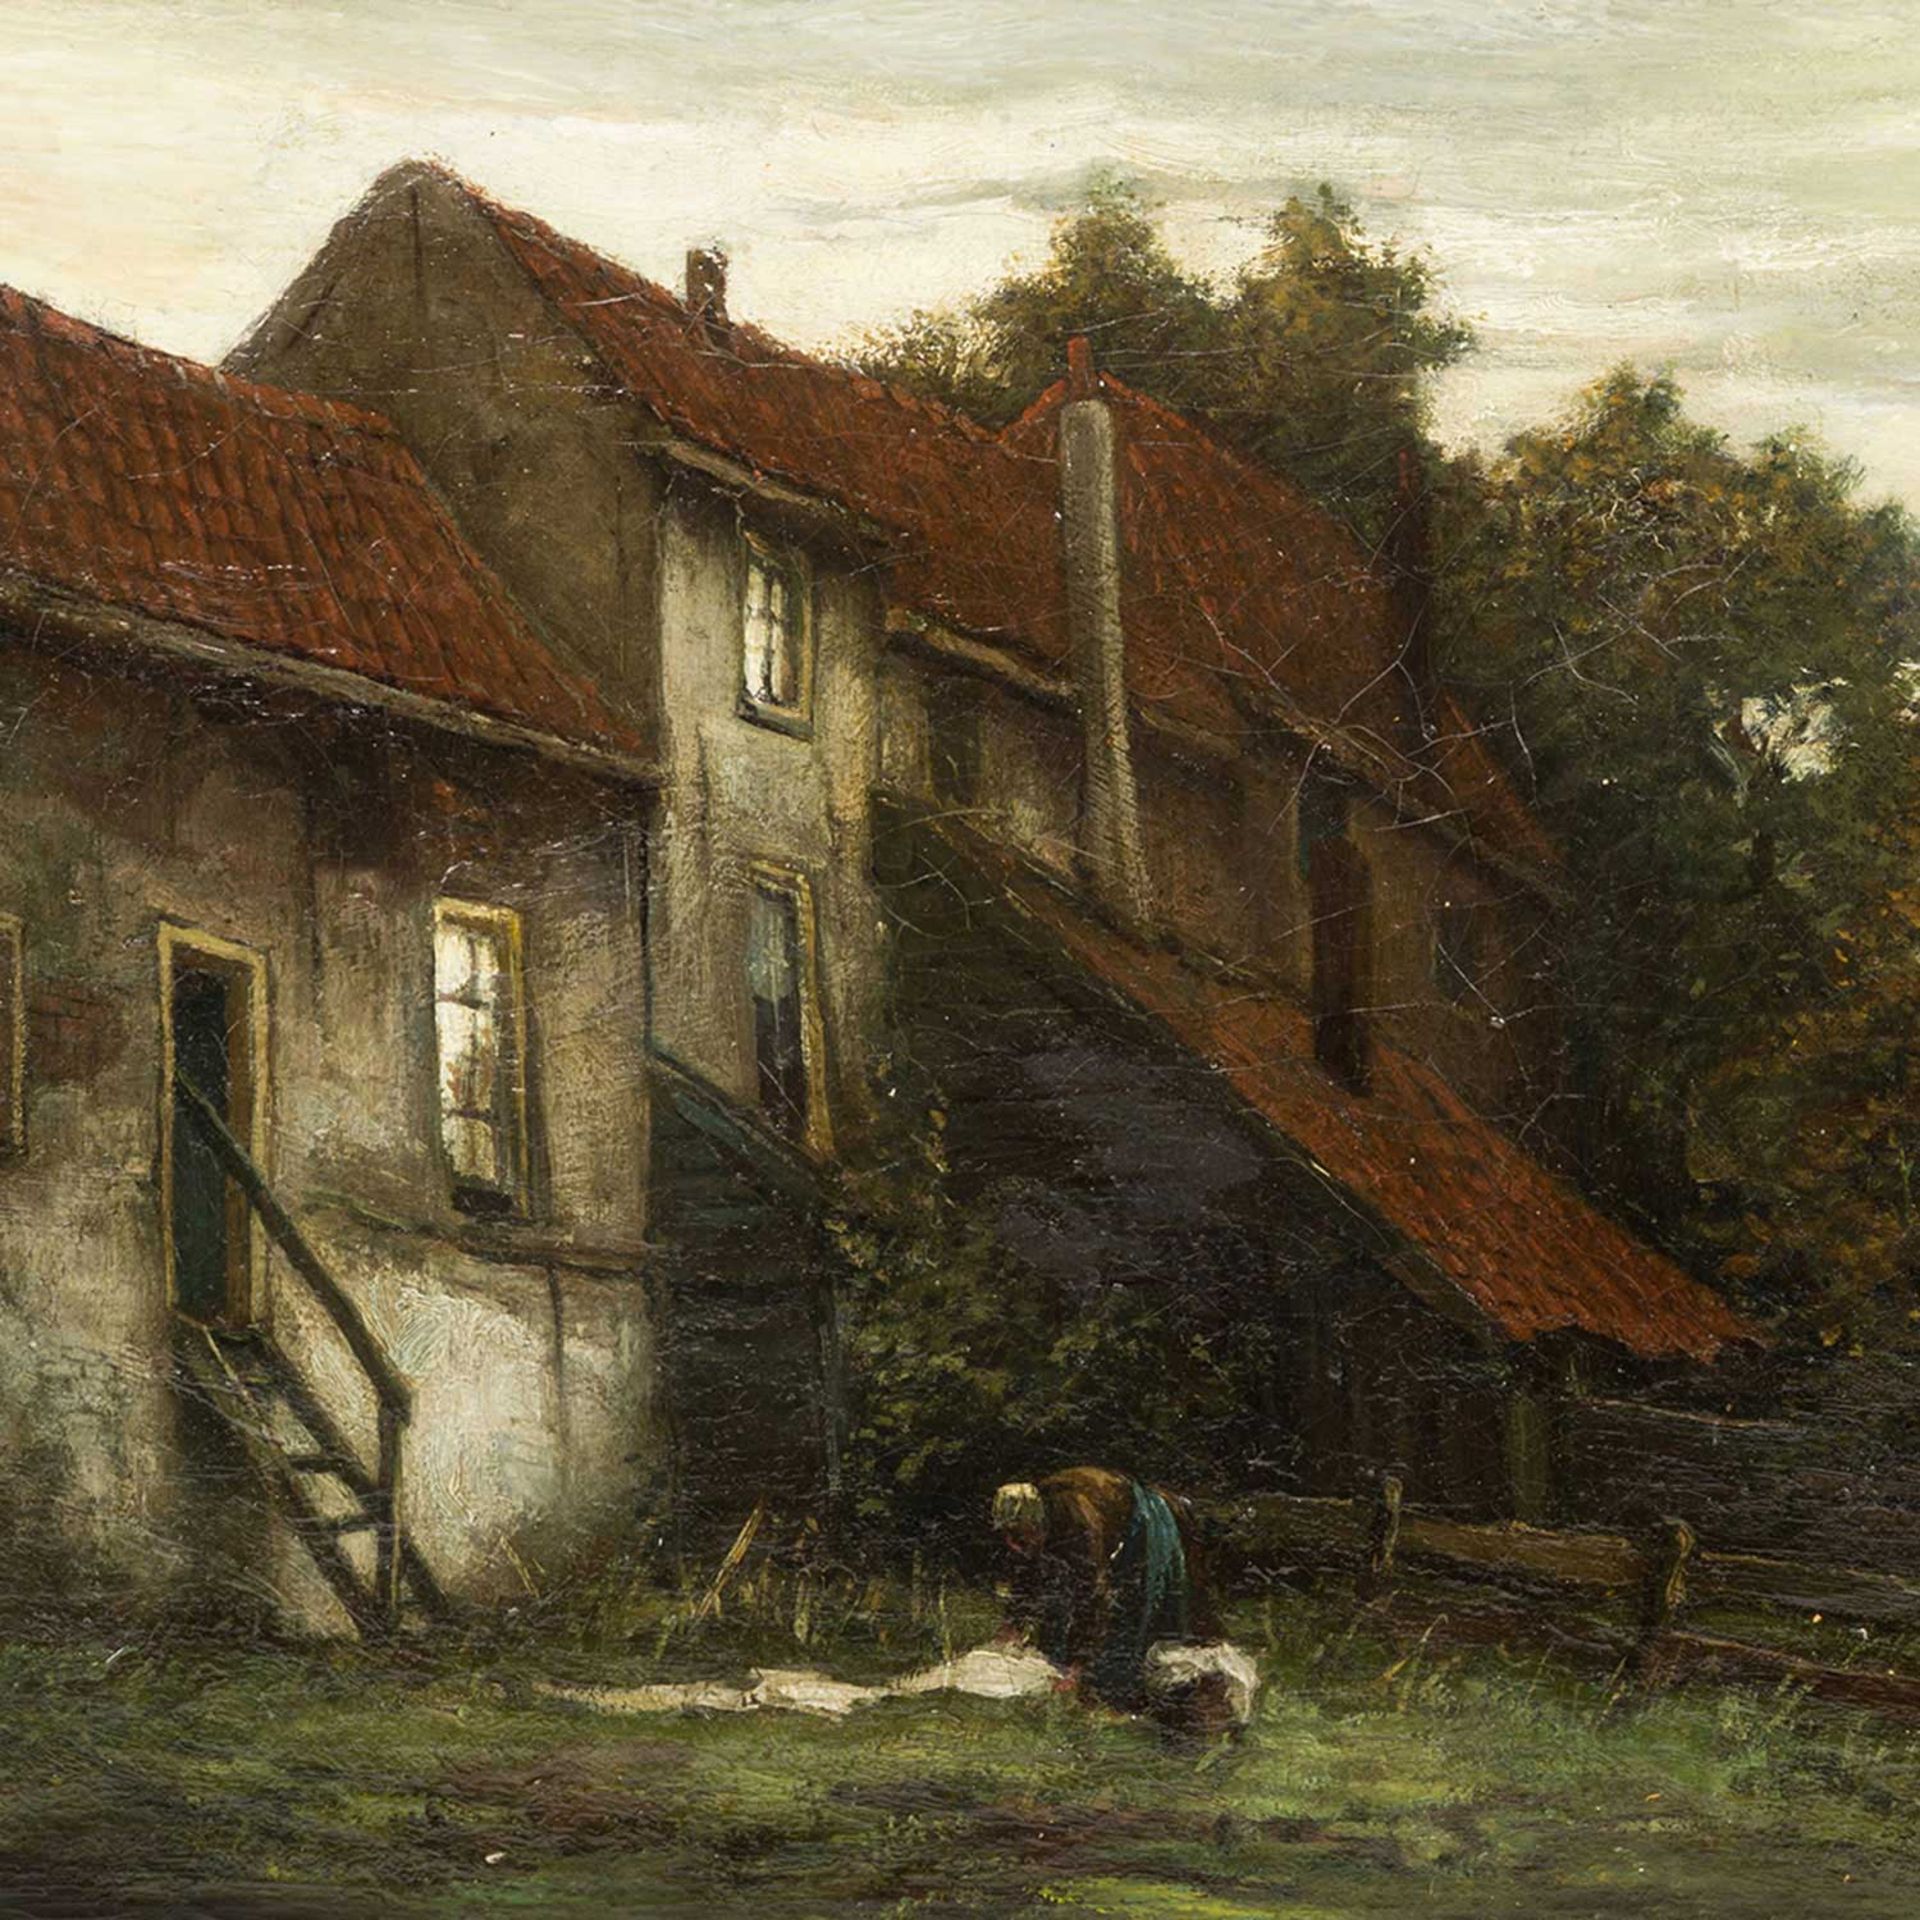 HEEMSKERK VAN BEEST, Jacob Eduard van (1828-1894), "Innenhof mit Frau", die Frau beim Auslegen der